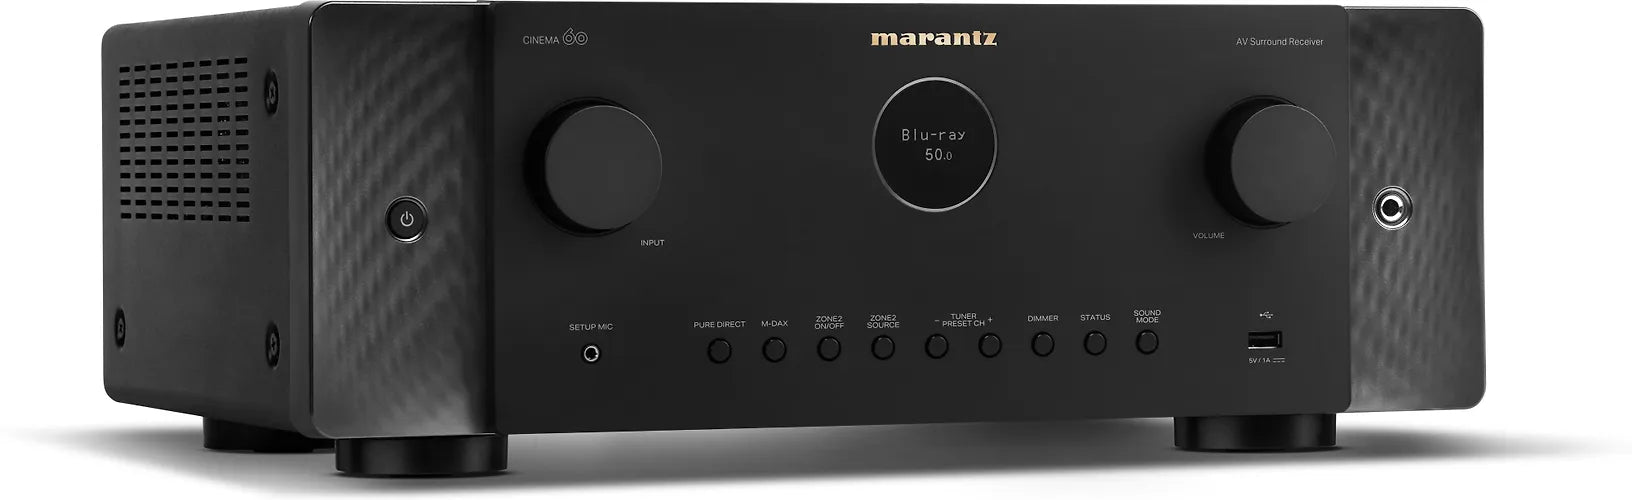 Marantz CINEMA 60 AV receiver